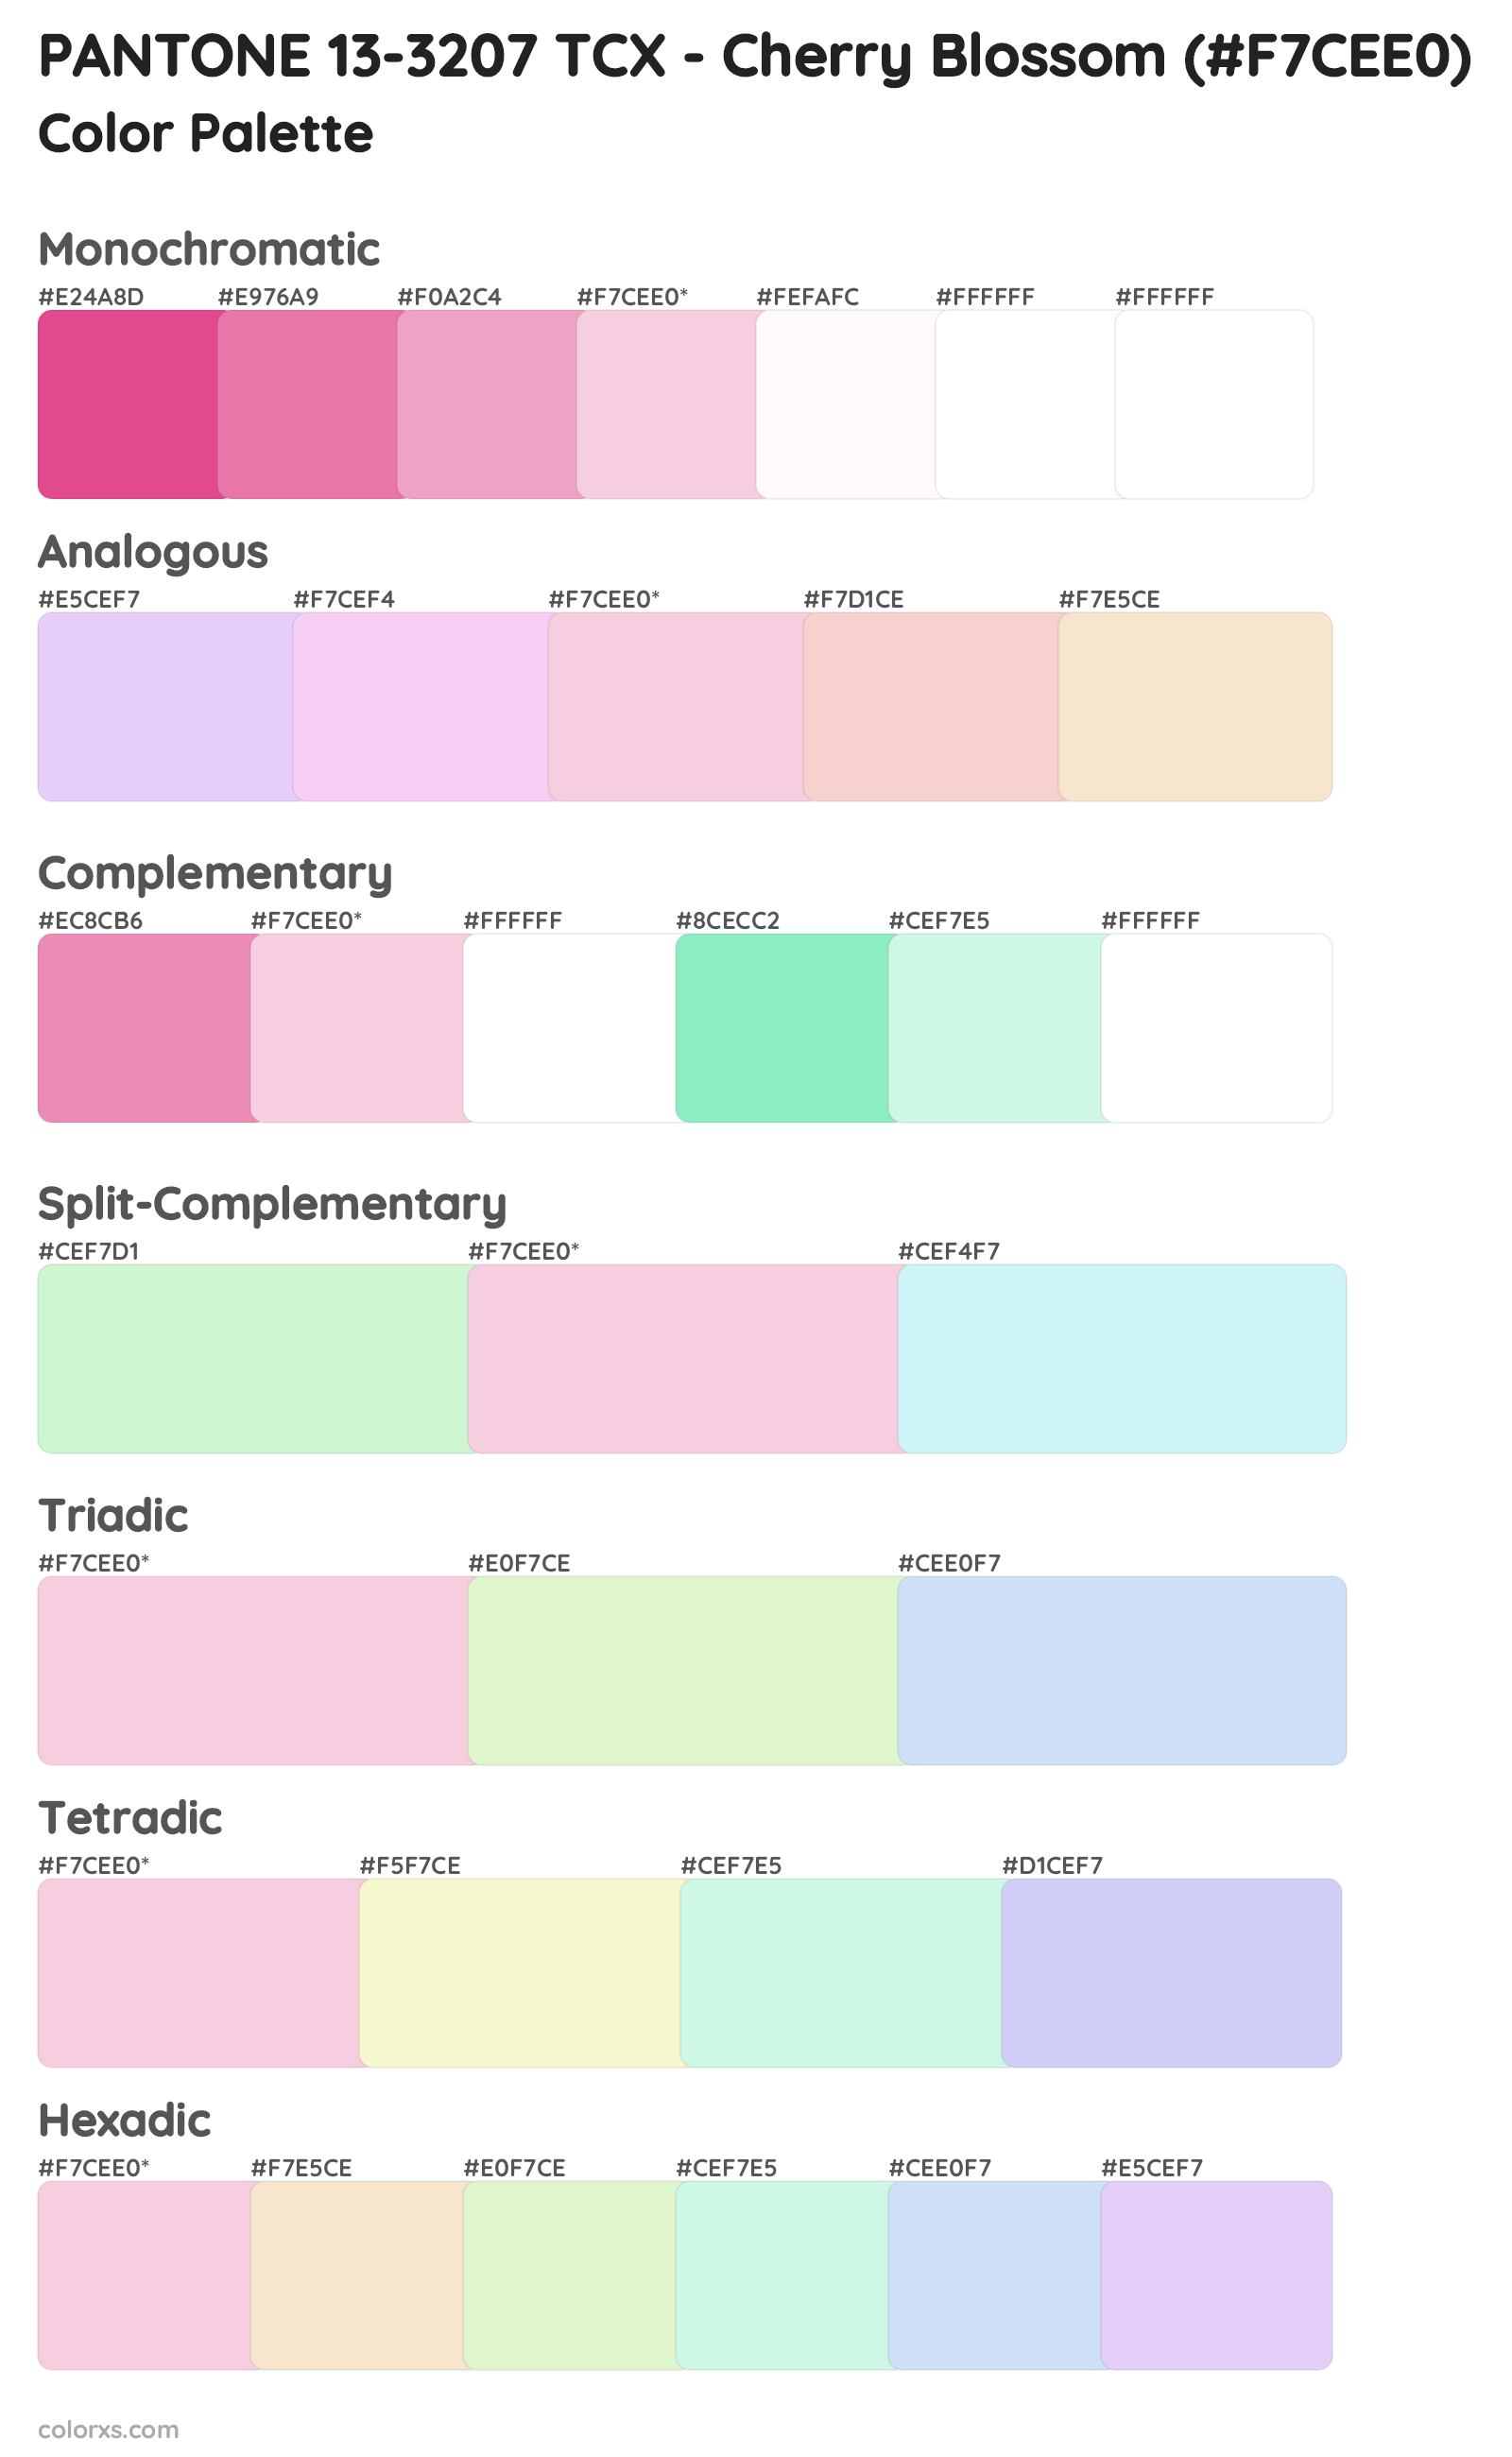 PANTONE 13-3207 TCX - Cherry Blossom Color Scheme Palettes